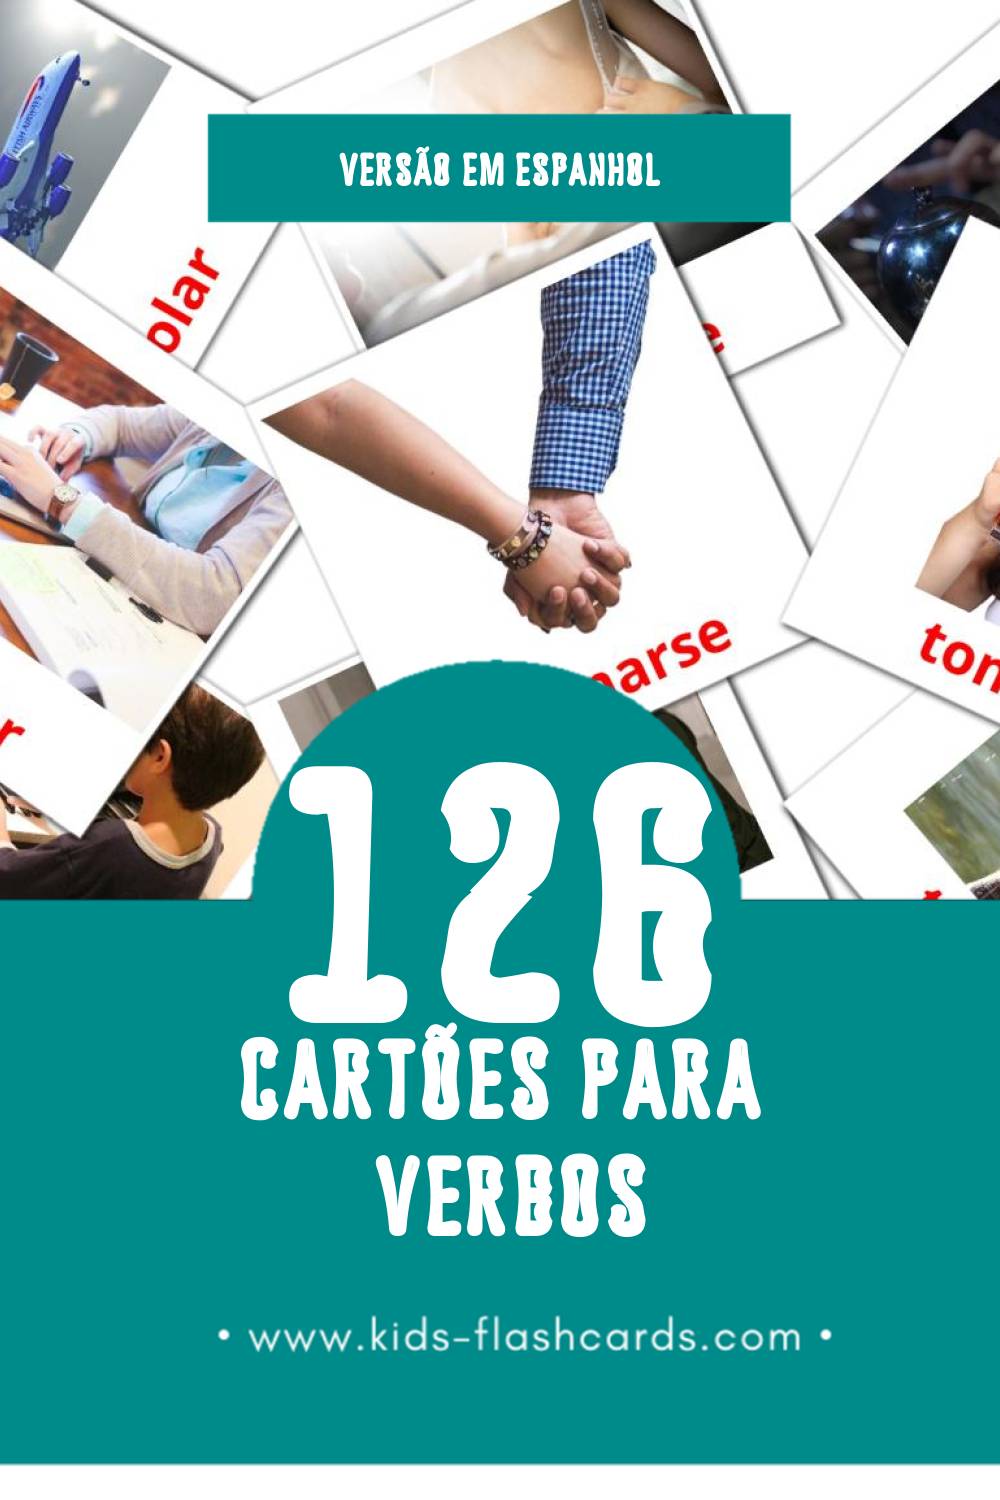 Flashcards de Verbosa Visuais para Toddlers (126 cartões em Espanhol)